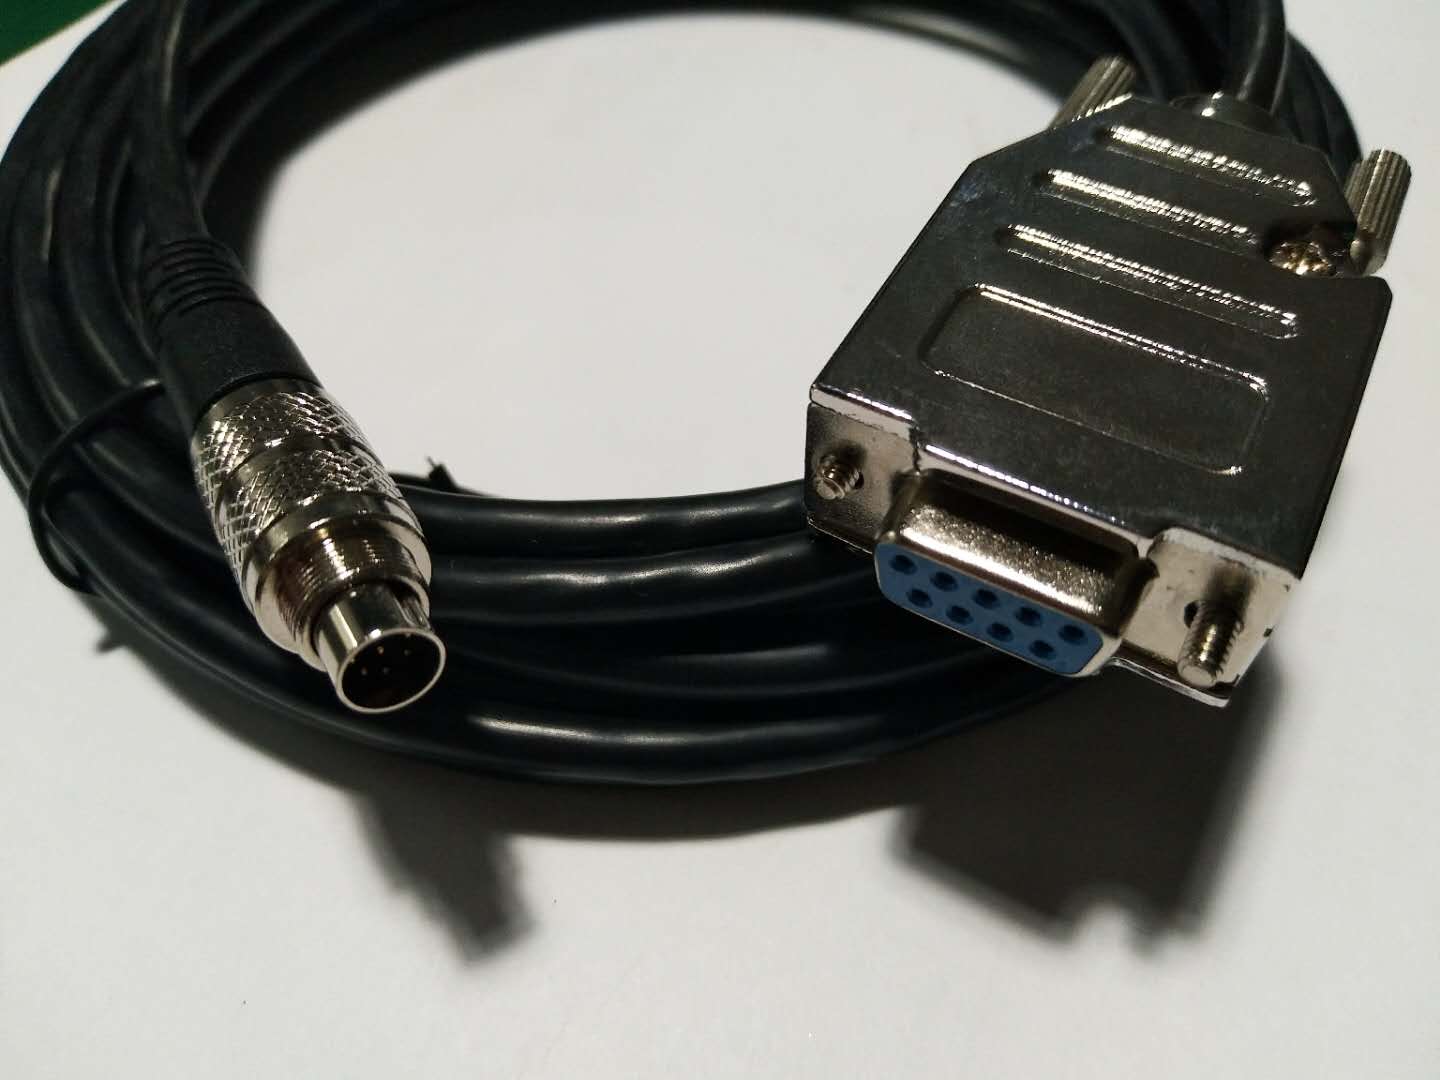 VGA TO M9 agilia cable